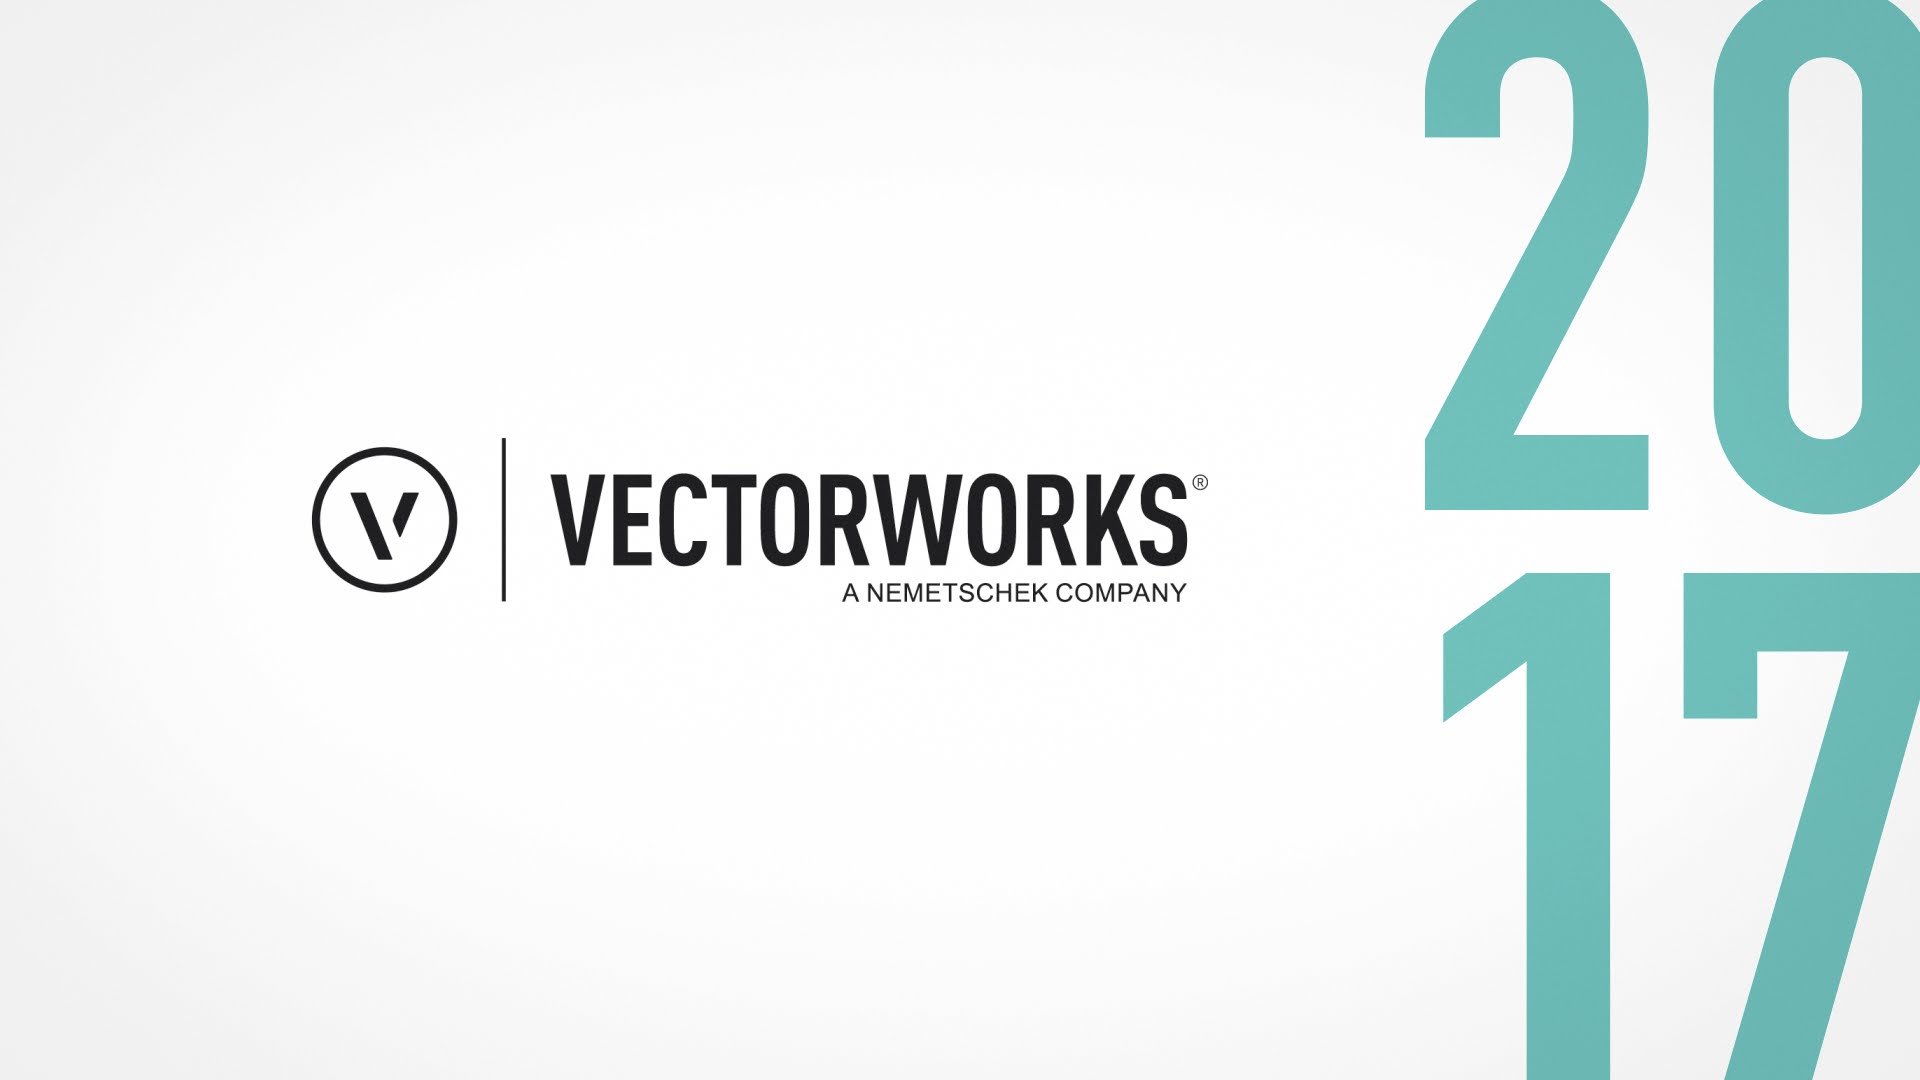 vectorworks 2015 download cracked